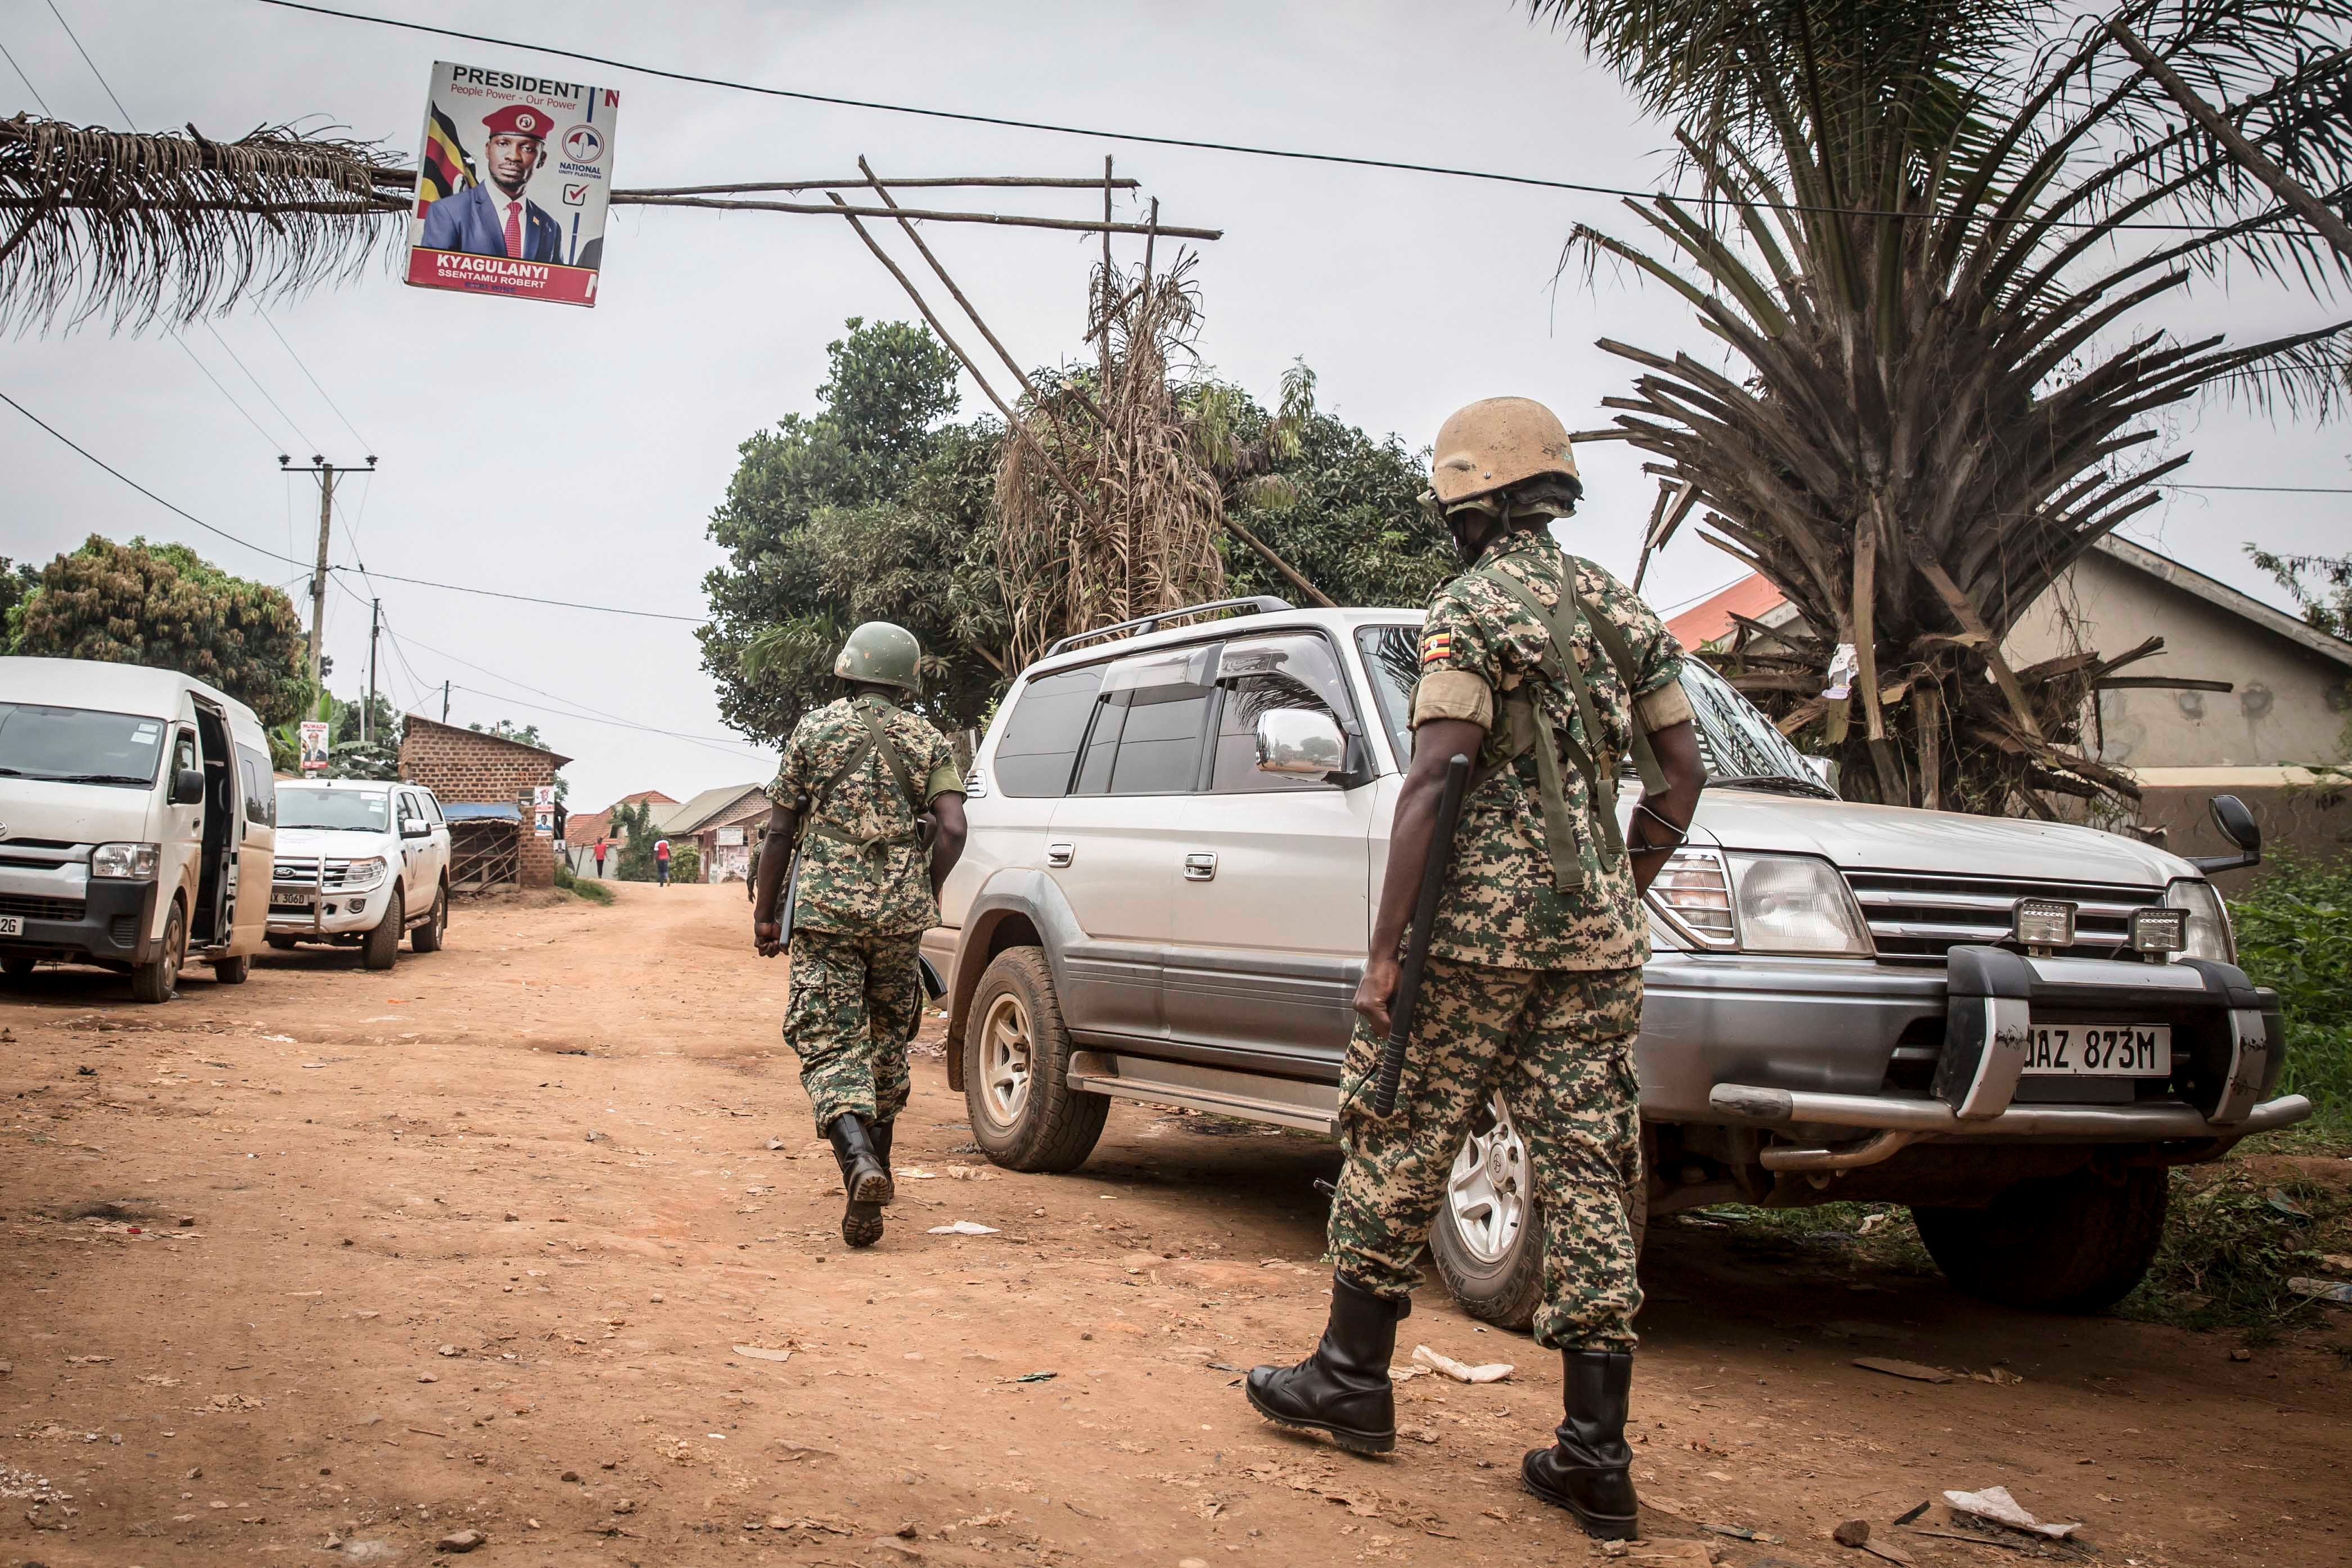 Ces deux soldats ougandais patrouillaient près de la maison du chef de l'opposition Bobi Wine (Robert Kyagulanyi) à Magere, en Ouganda, le 16 janvier 2021. Bobi Wine, qui était candidat à l’élection présidentielle du 14 janvier, avait été assigné à résidence durant cette période.